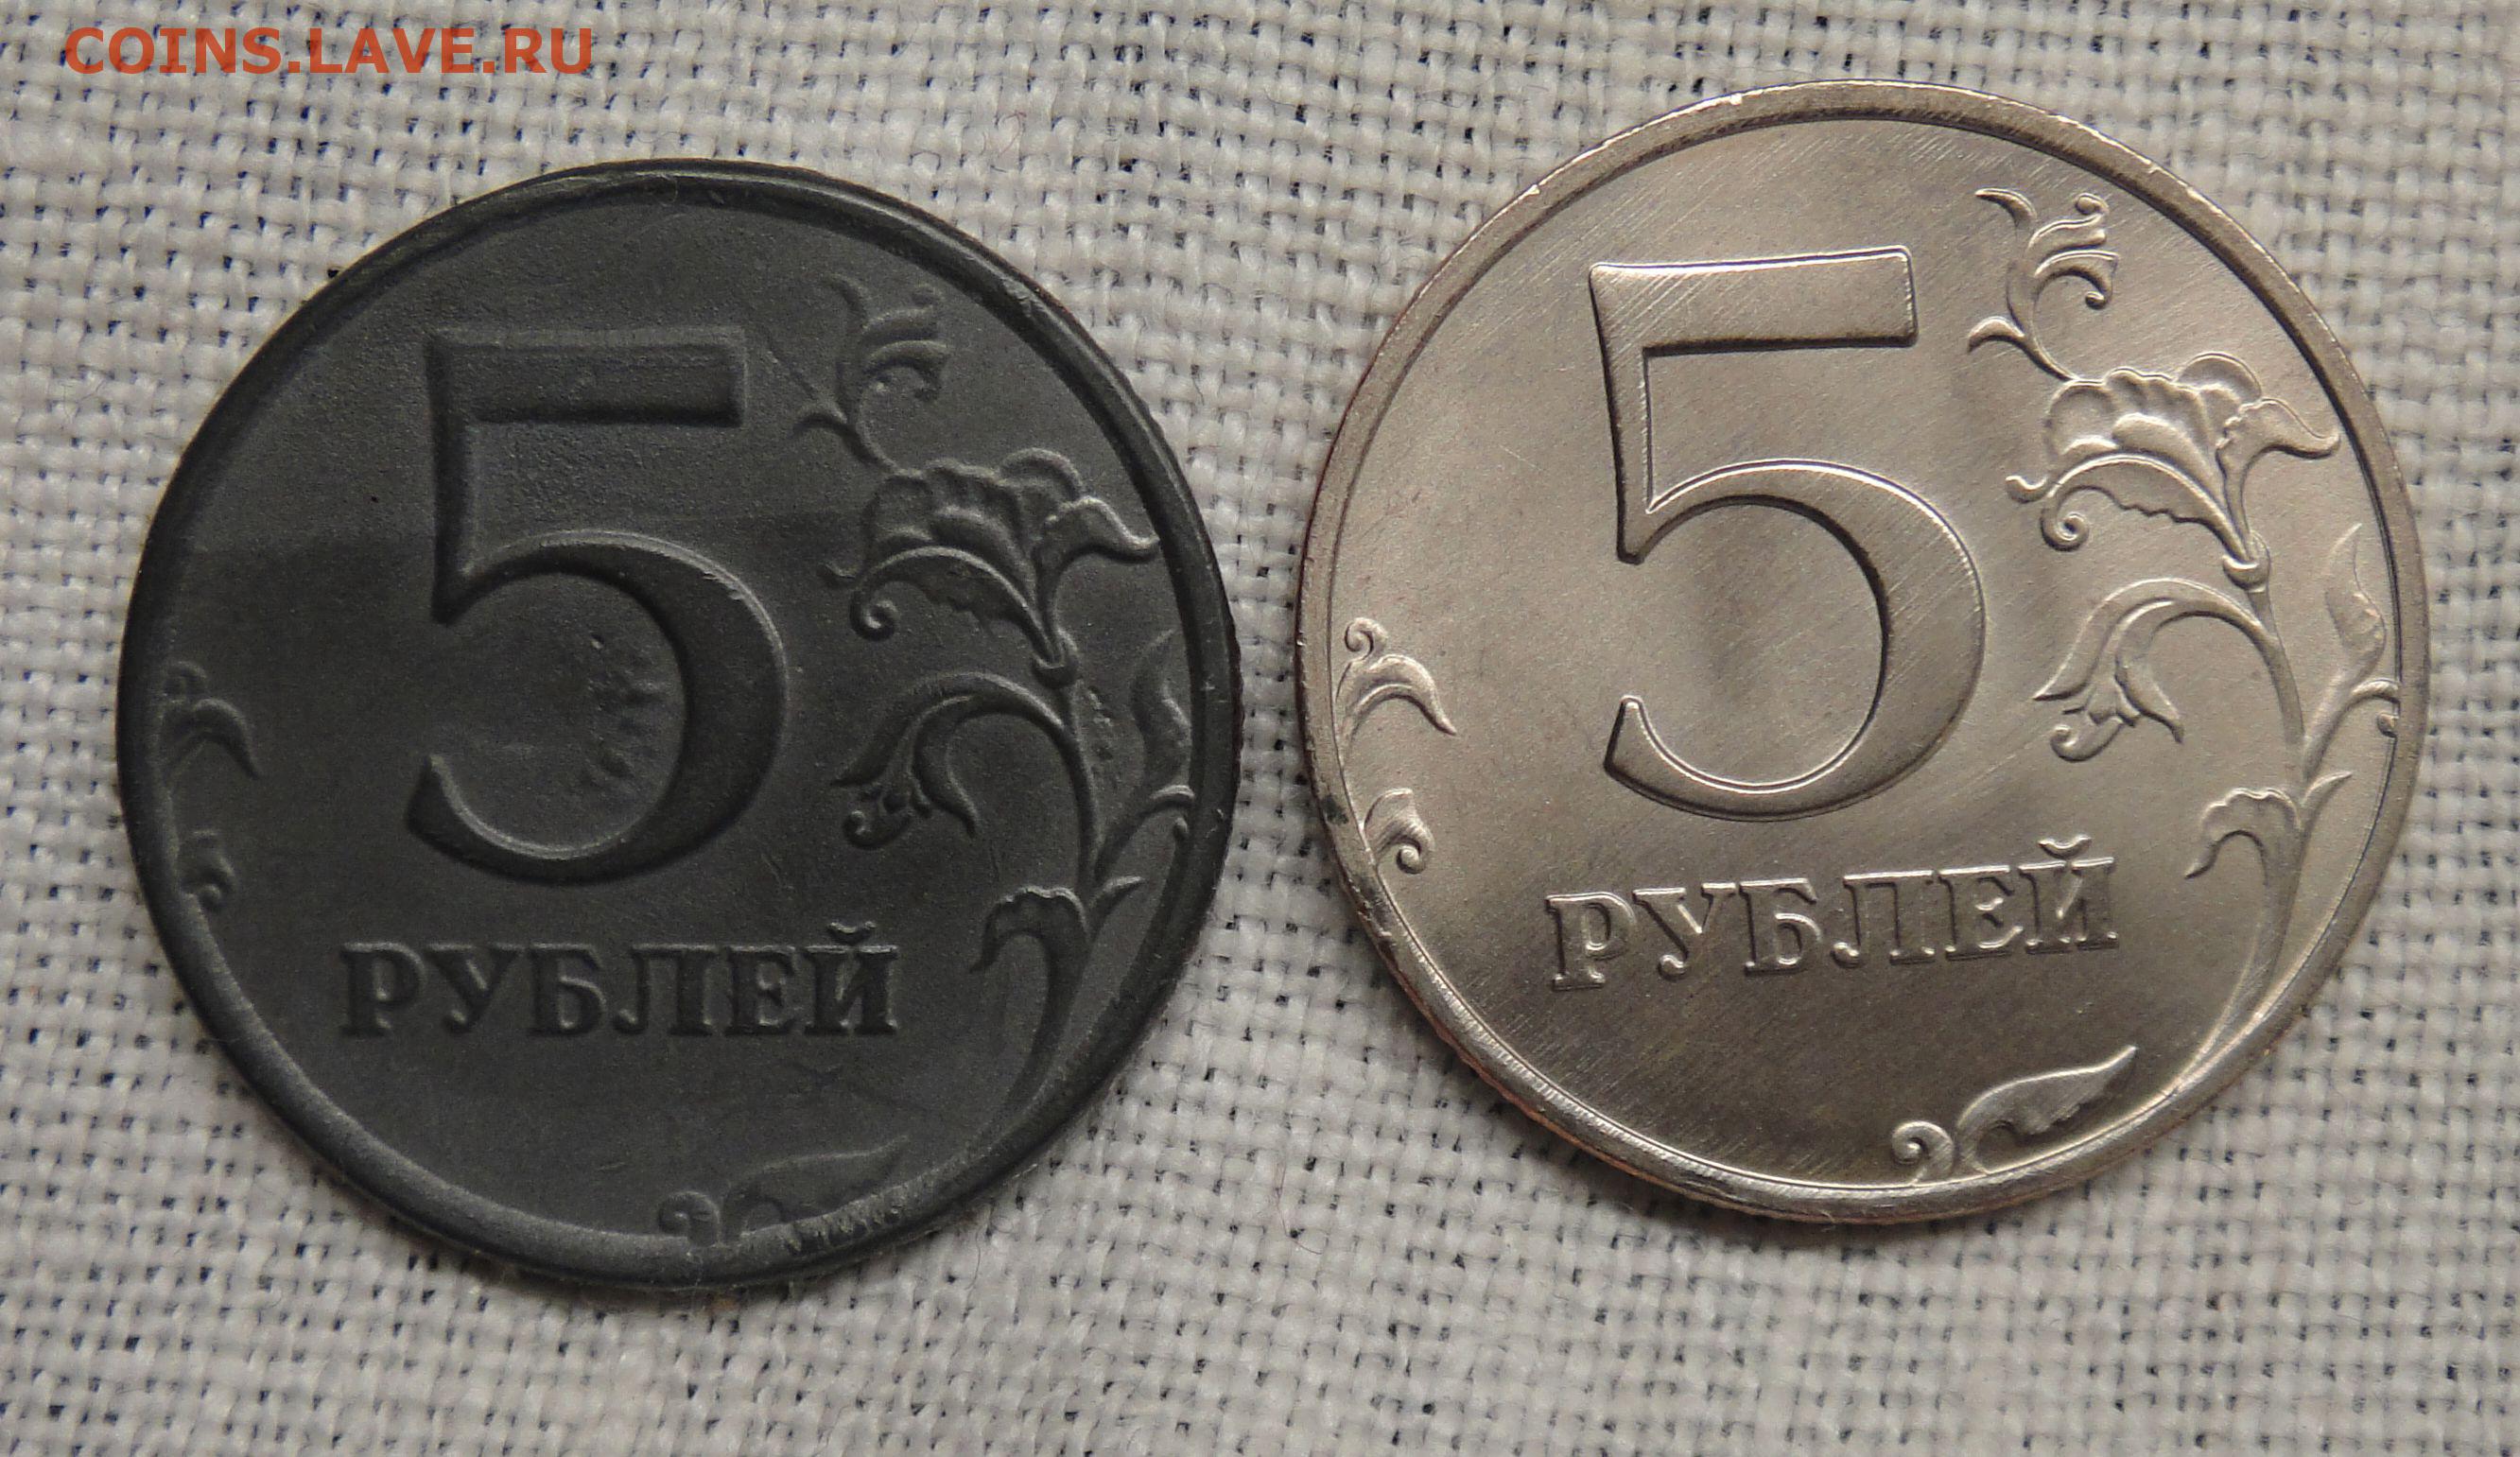 17 5 в рублях. Фальшивые 5 рублей. 5 Рублей 1997. 5 Руб 1997. Пять рублей 1997 метало.